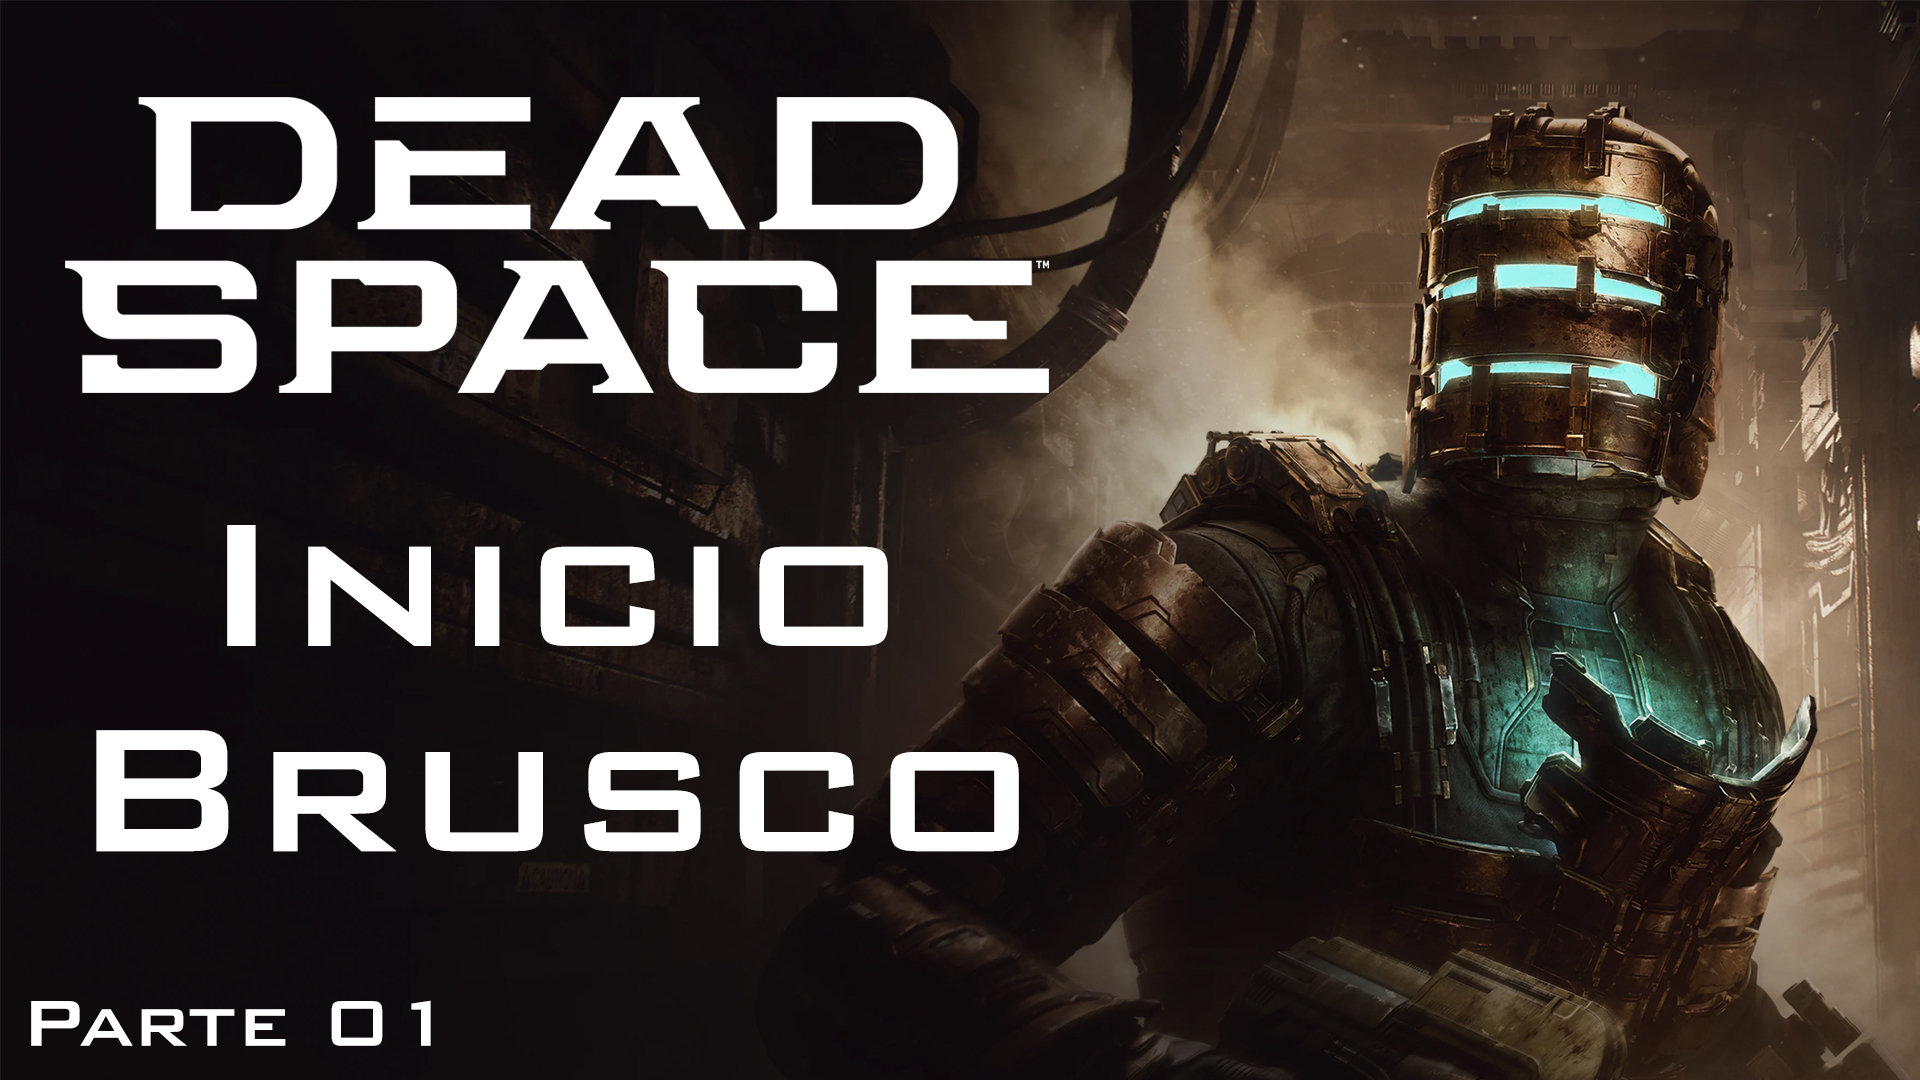 Serie Dead Space Remake #1 – Inicio Brusco